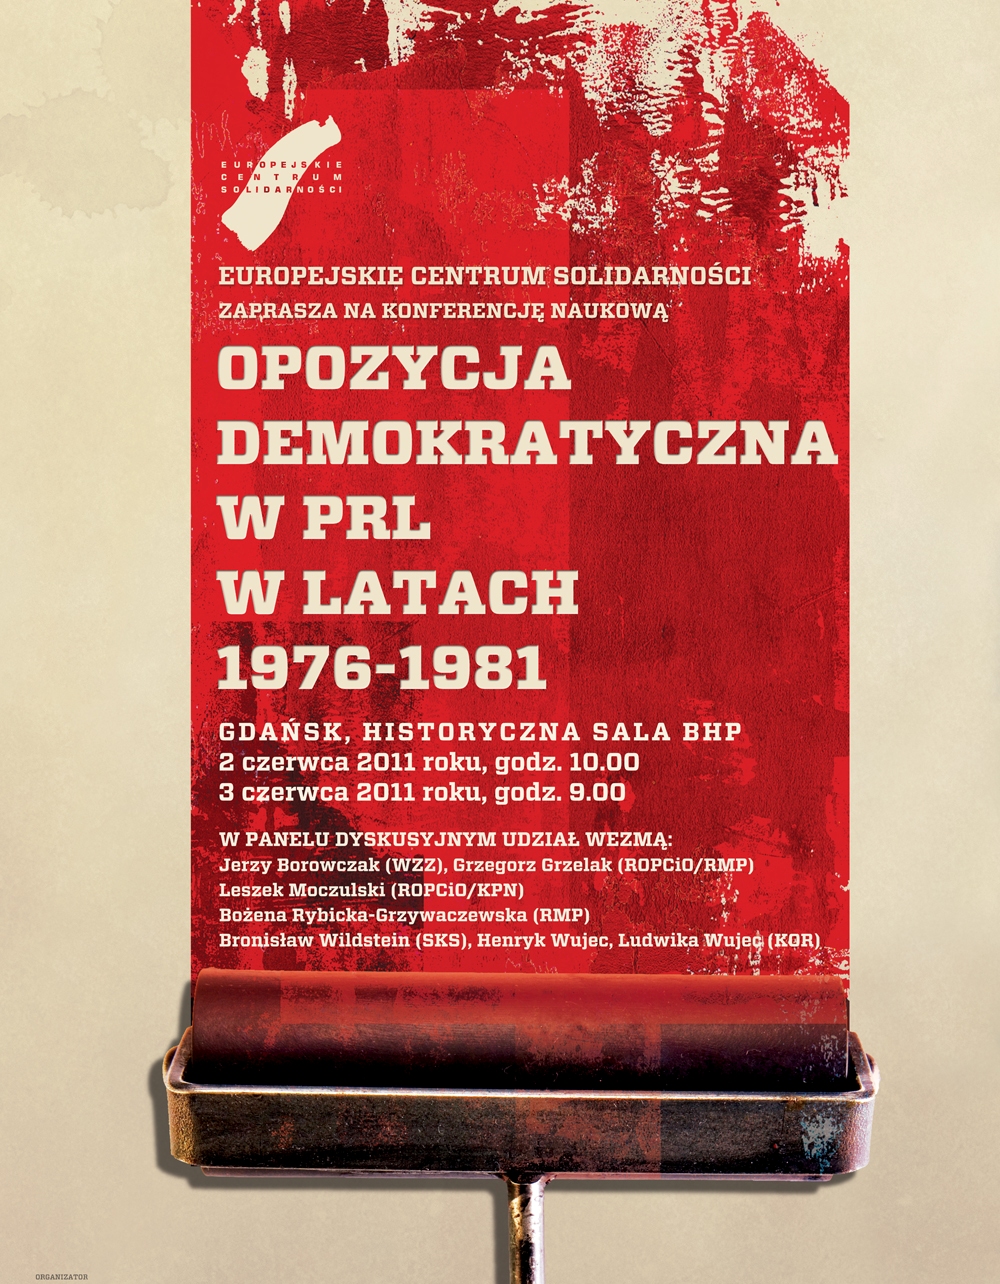 Konferencja: "Opozycja demokratyczna w PRL w latach 1976-1981", plakat